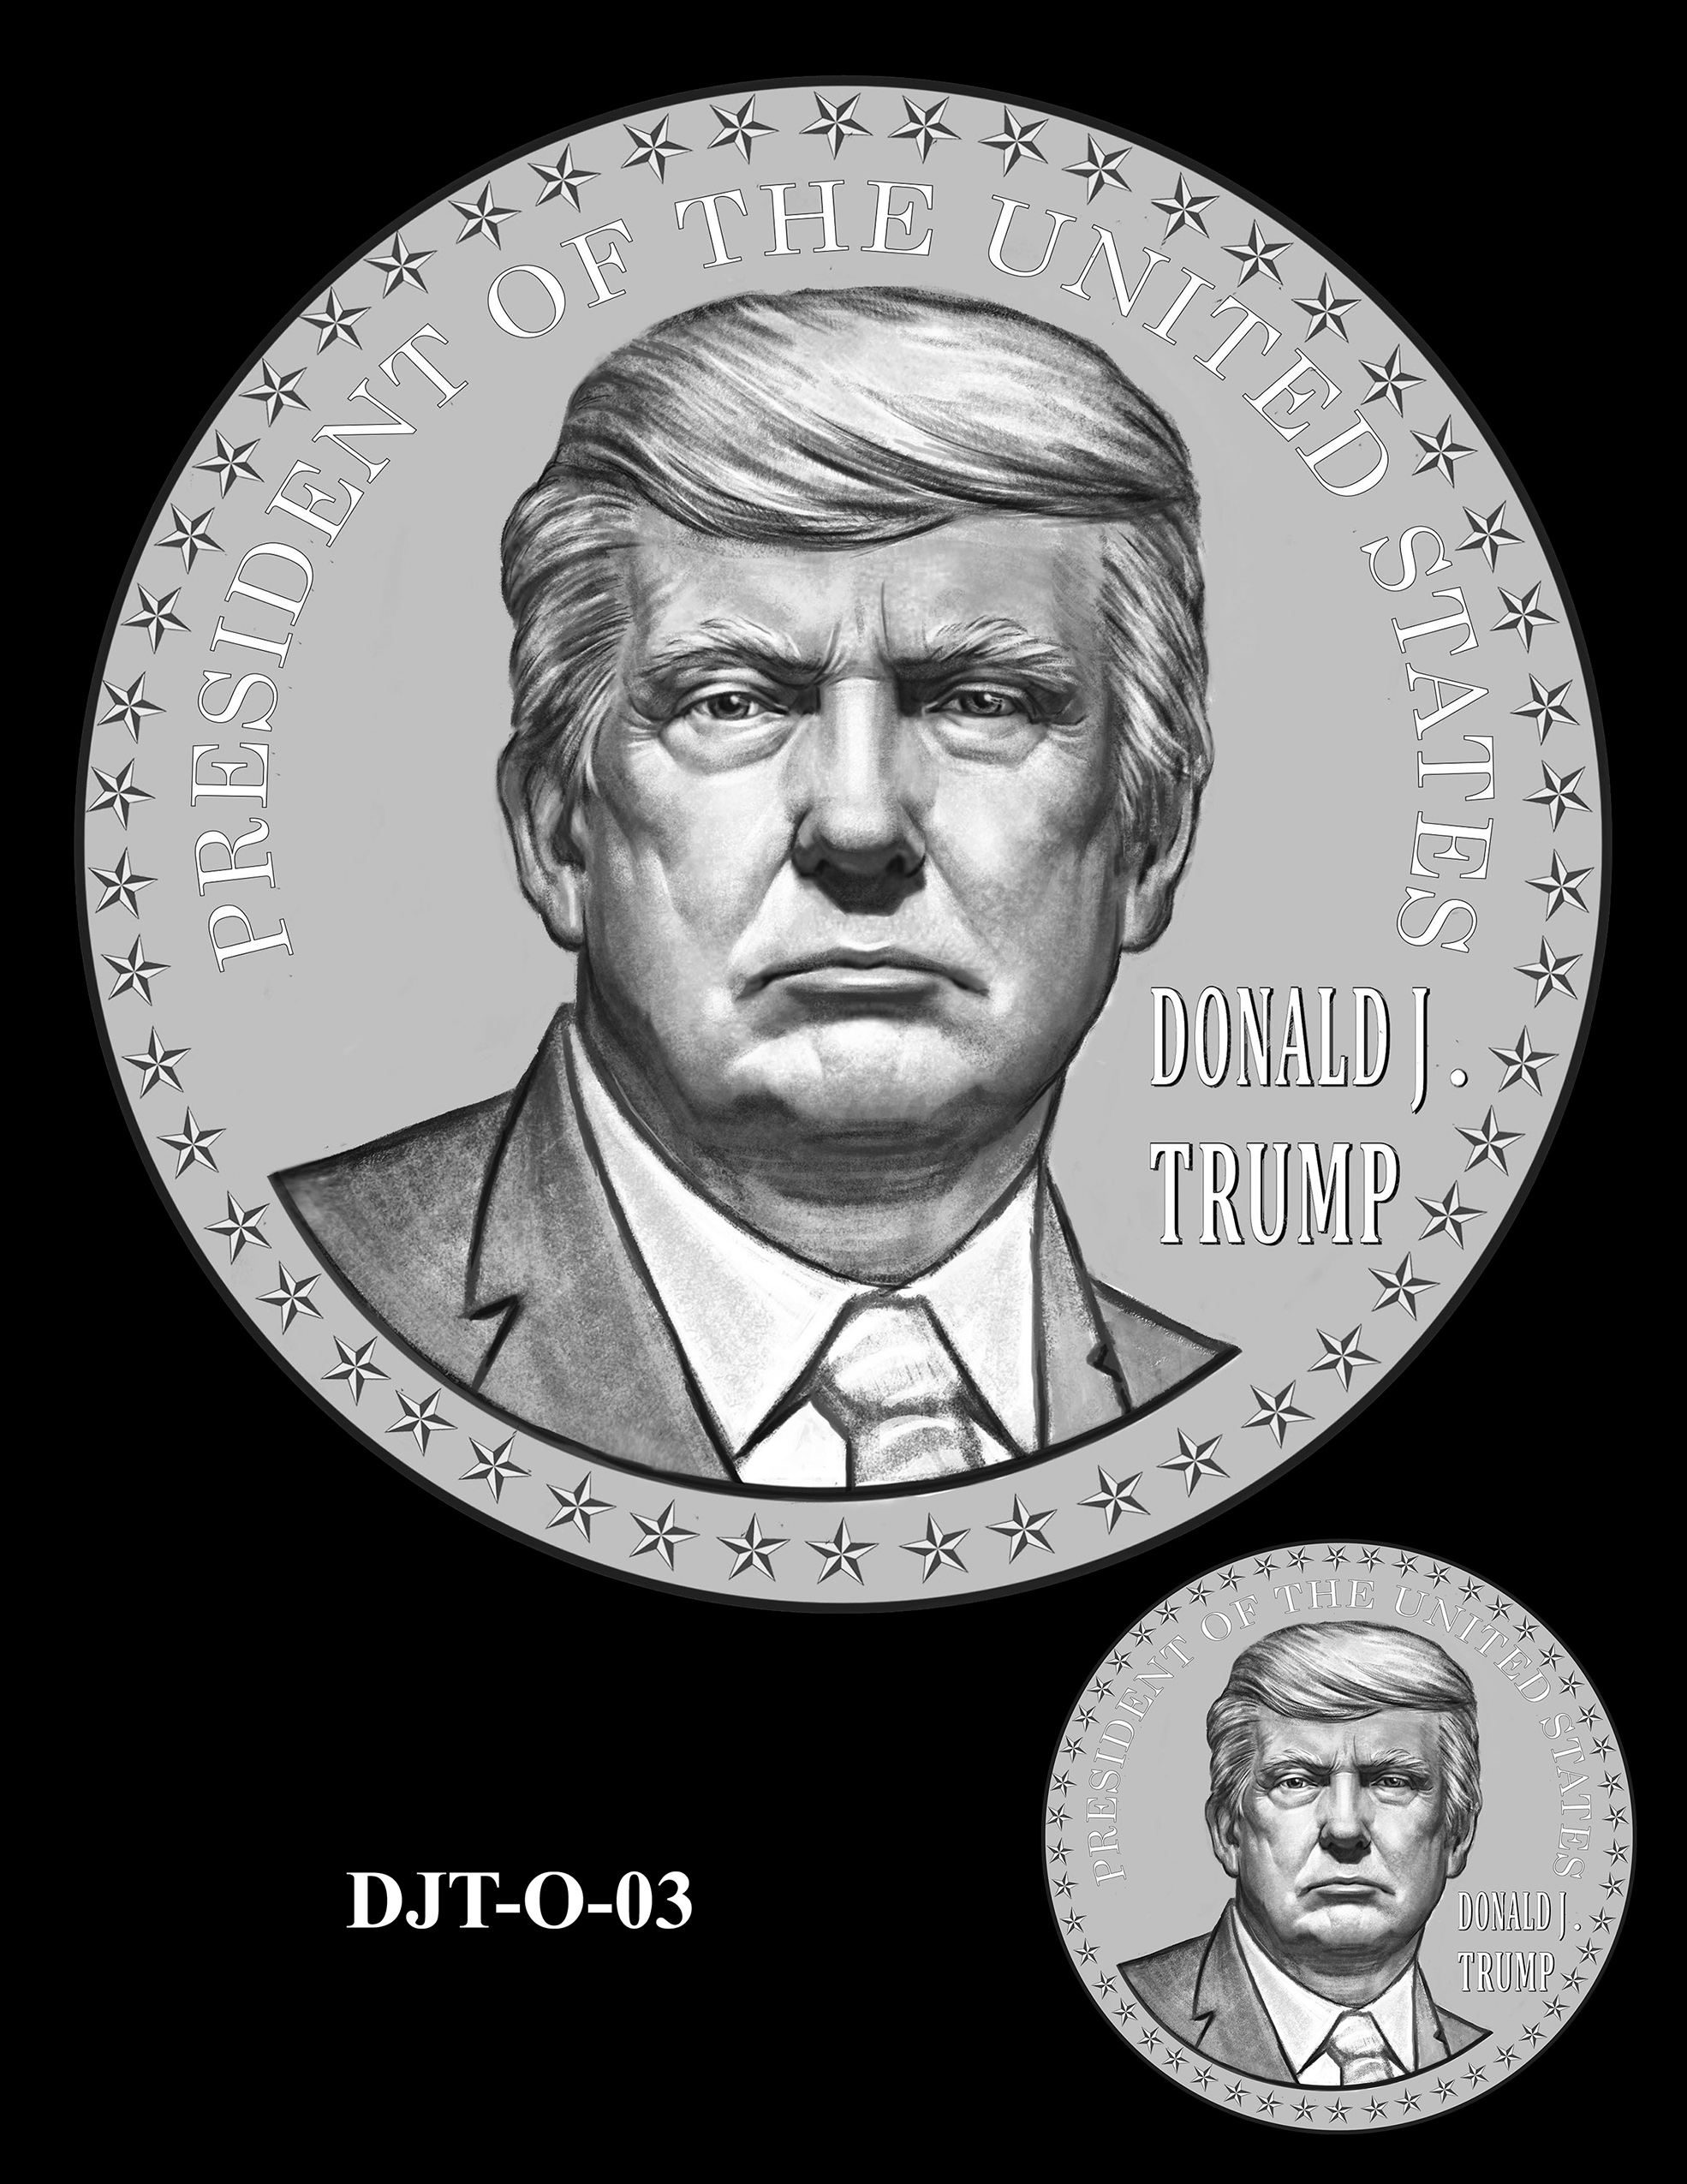 DJT-O-03 -- Donald J. Trump Presidential Medal